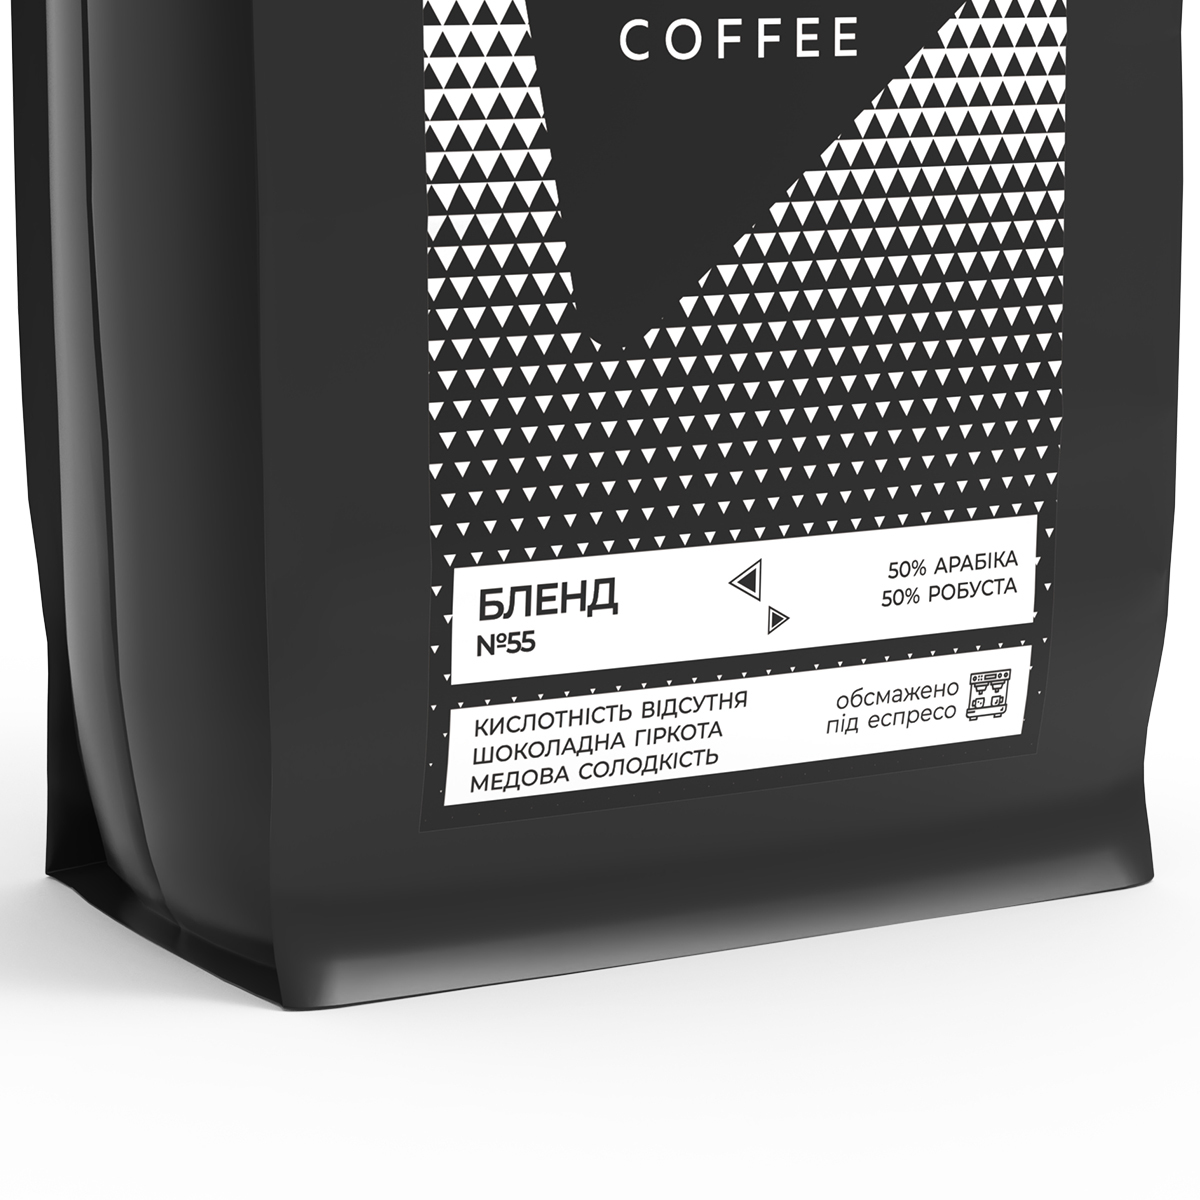 Кофе в зернах Bedoin Coffee Бленд 55, 1 кг - фото 2